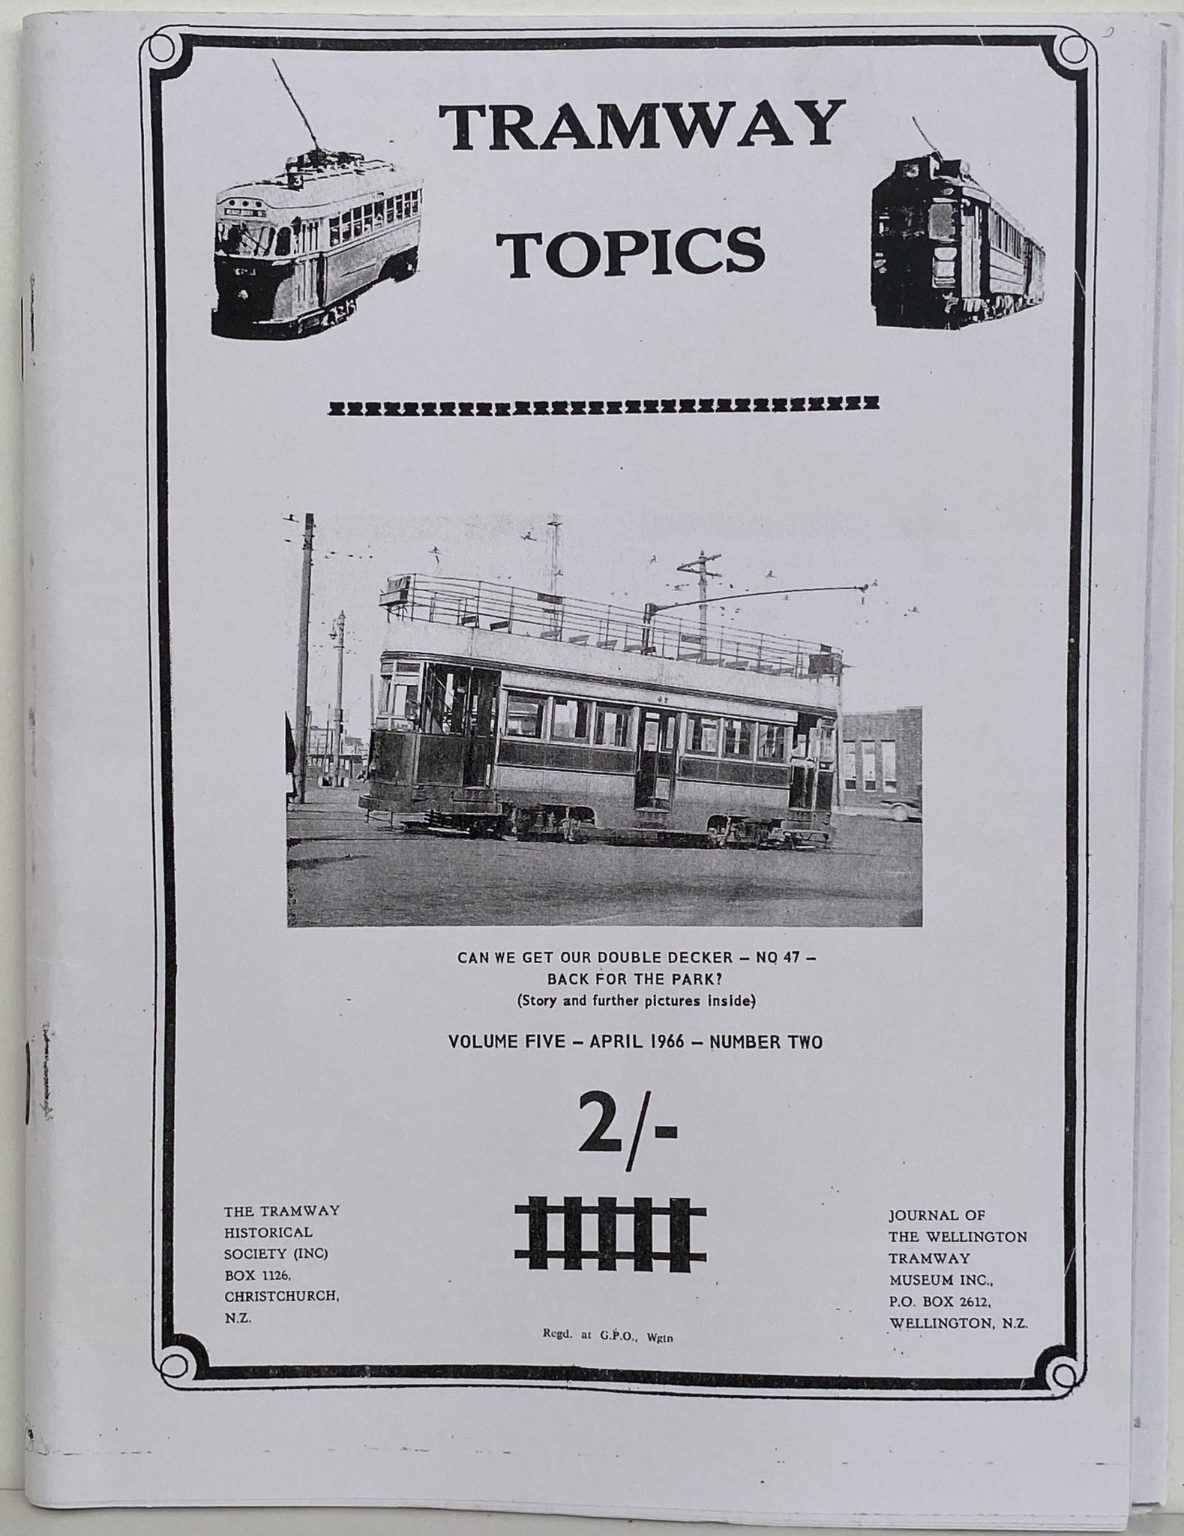 TRAMWAY TOPICS Vol 5, No 2, April 1966